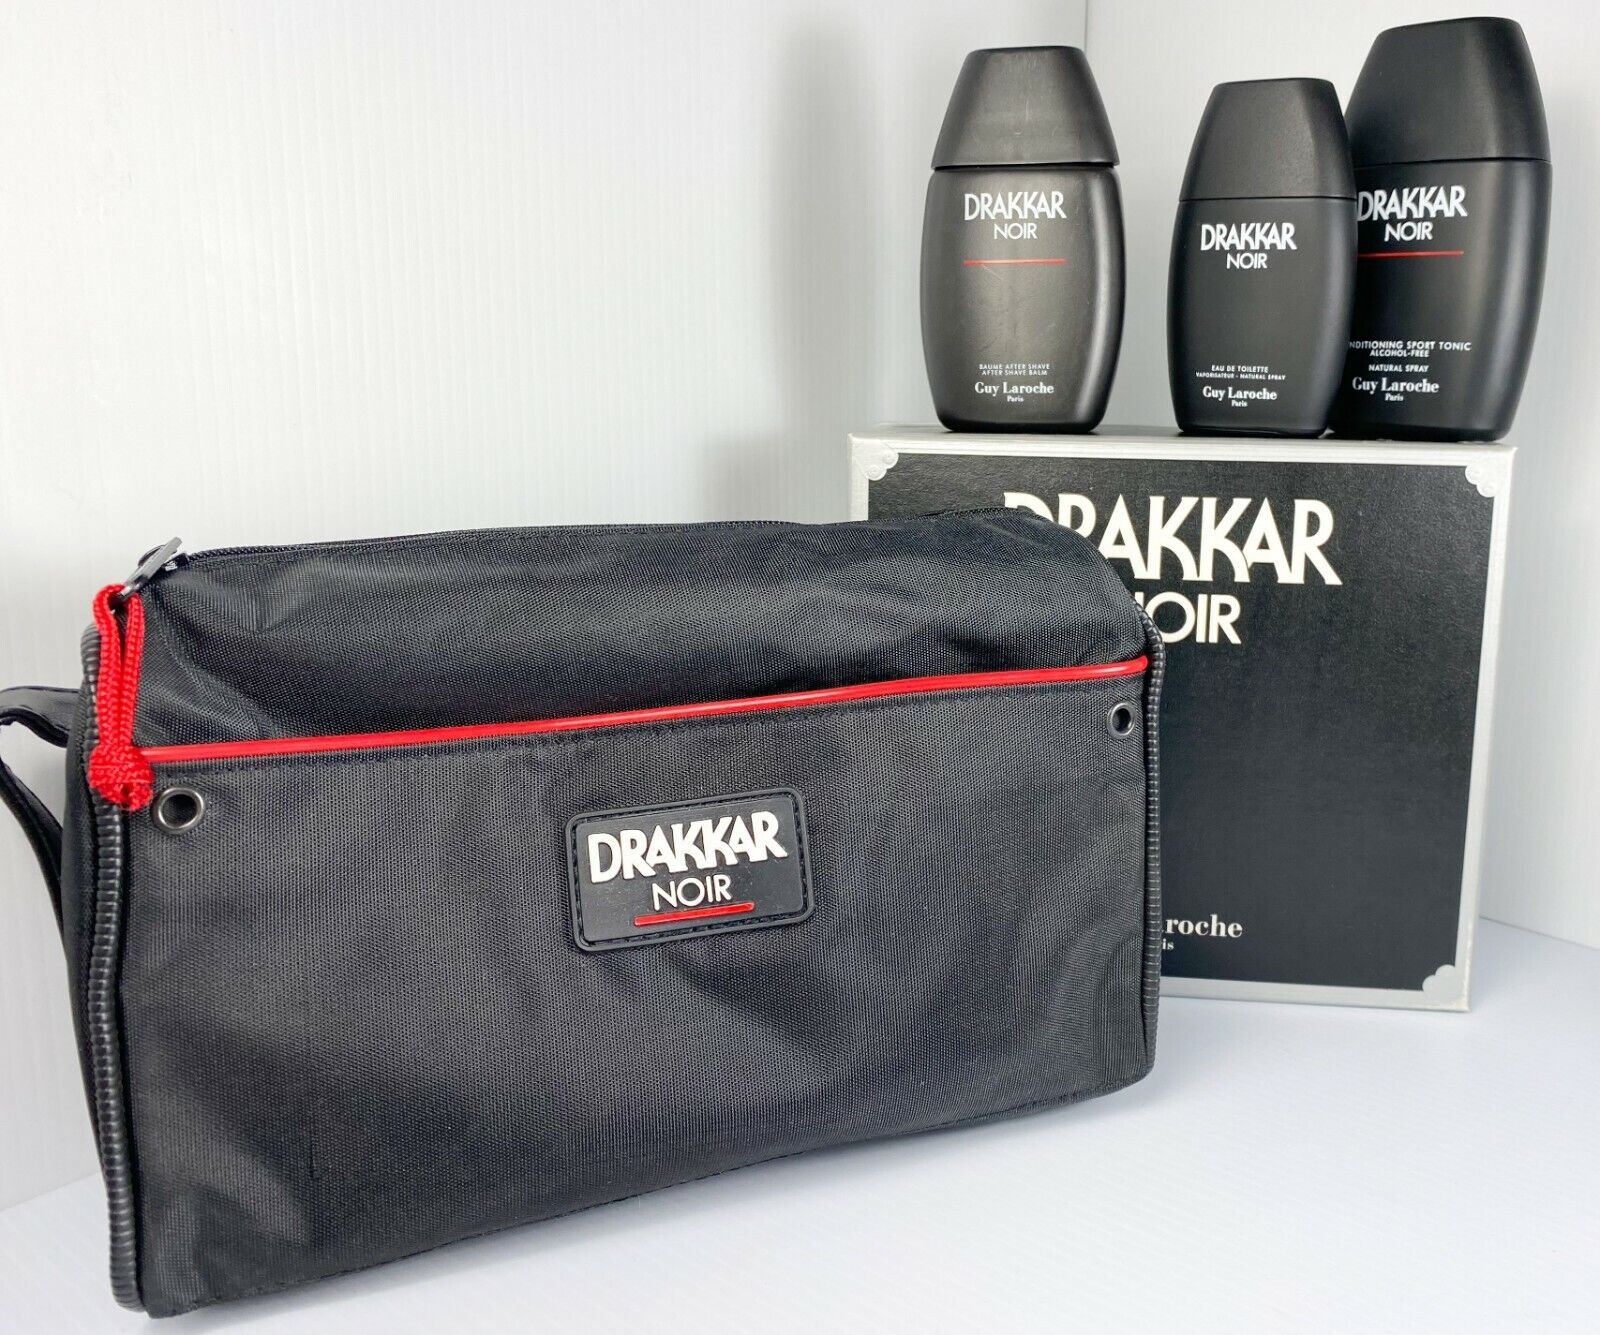 DRAKKAR NOIR Eau De Toilette/After Shave Gift Set,Sport Tonic,Bag ORIG COSMAIR